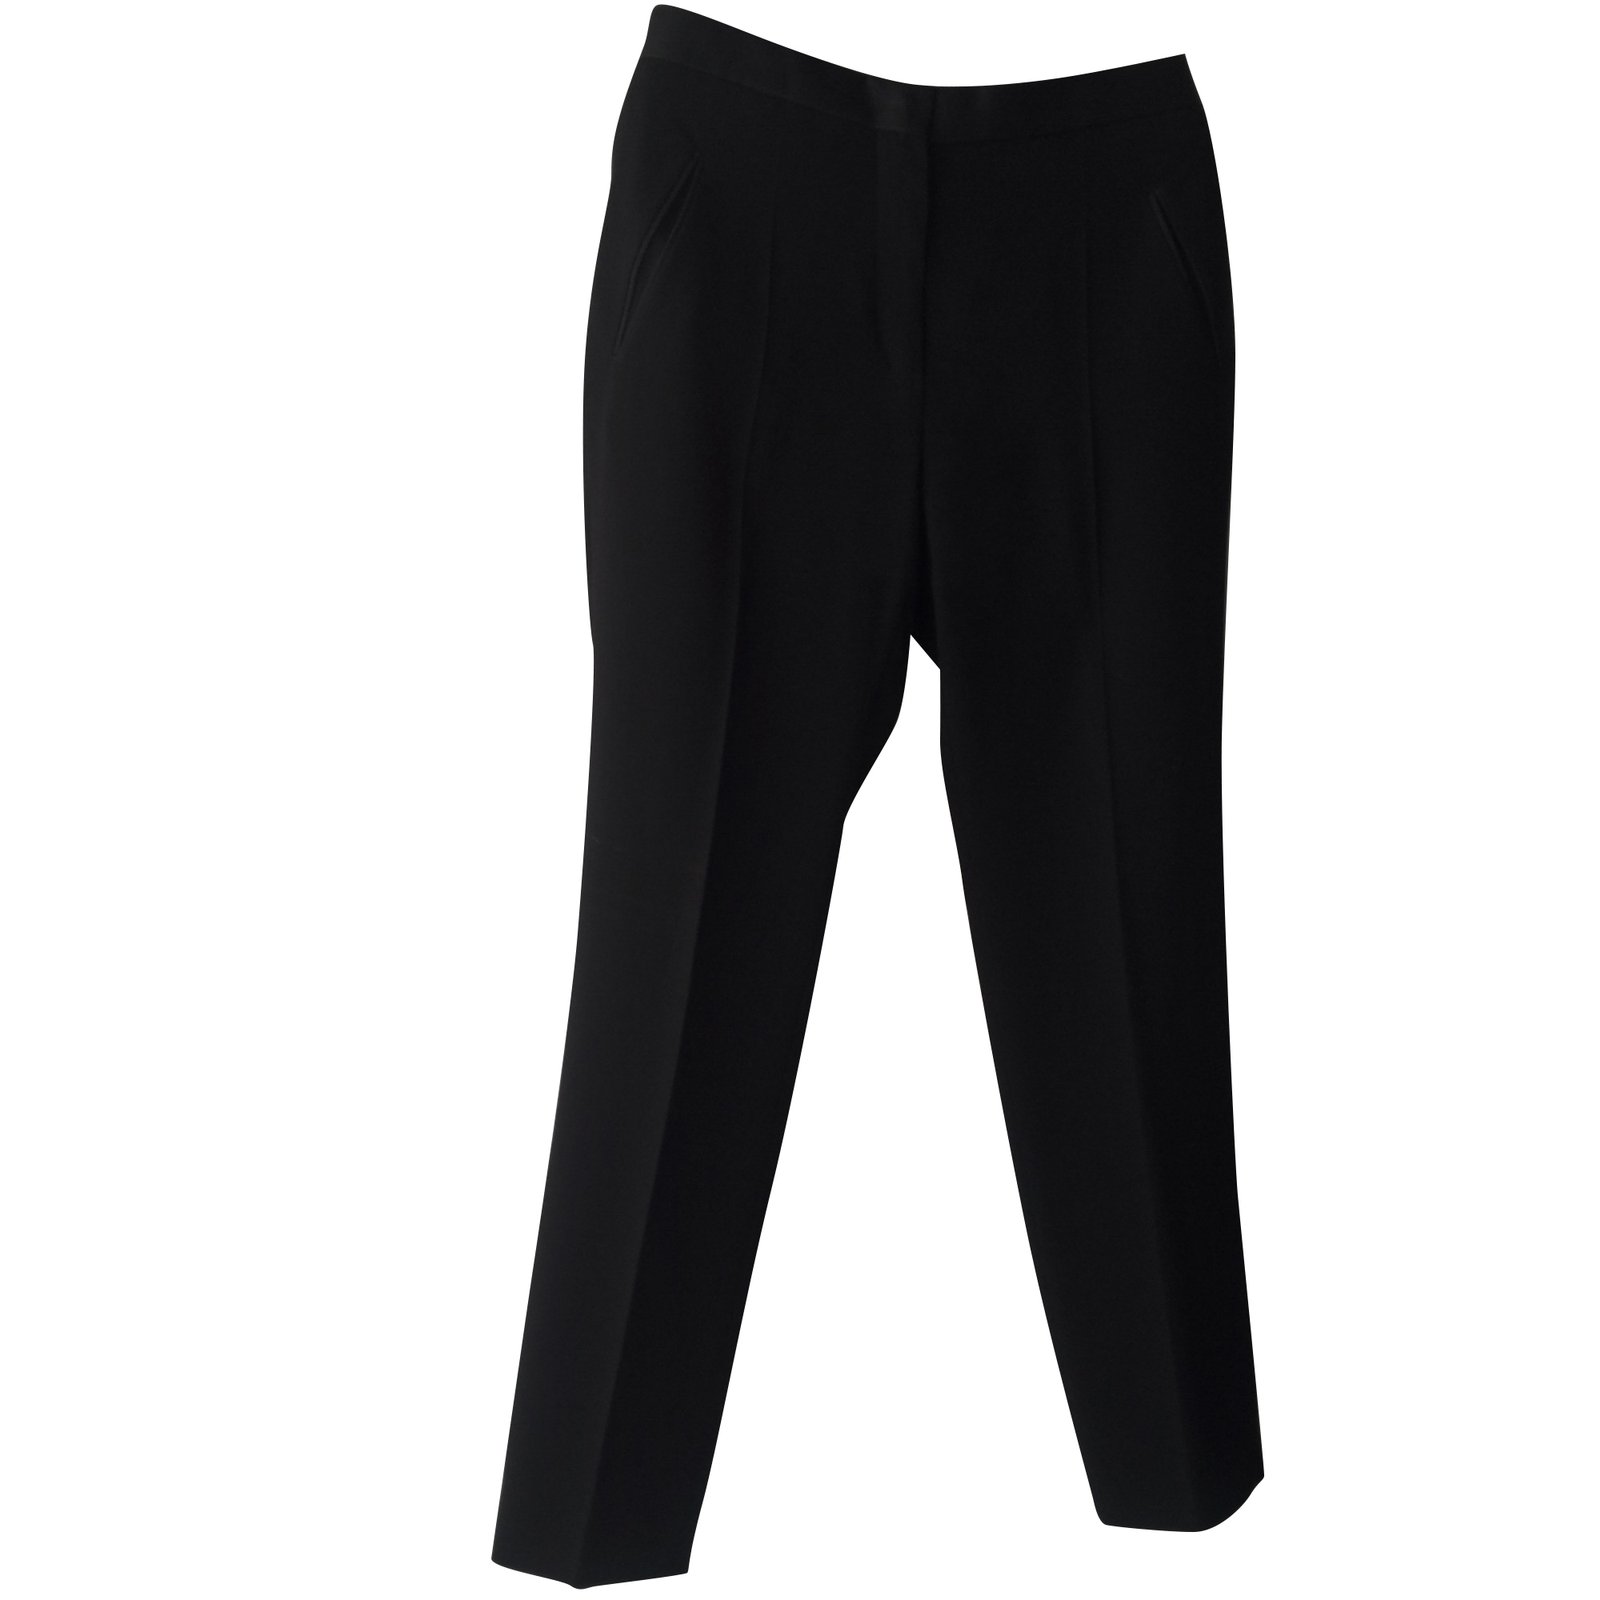 https://cdn1.jolicloset.com/imgr/full/2018/12/98198-1/celine-black-triacetate-pants-leggings.jpg